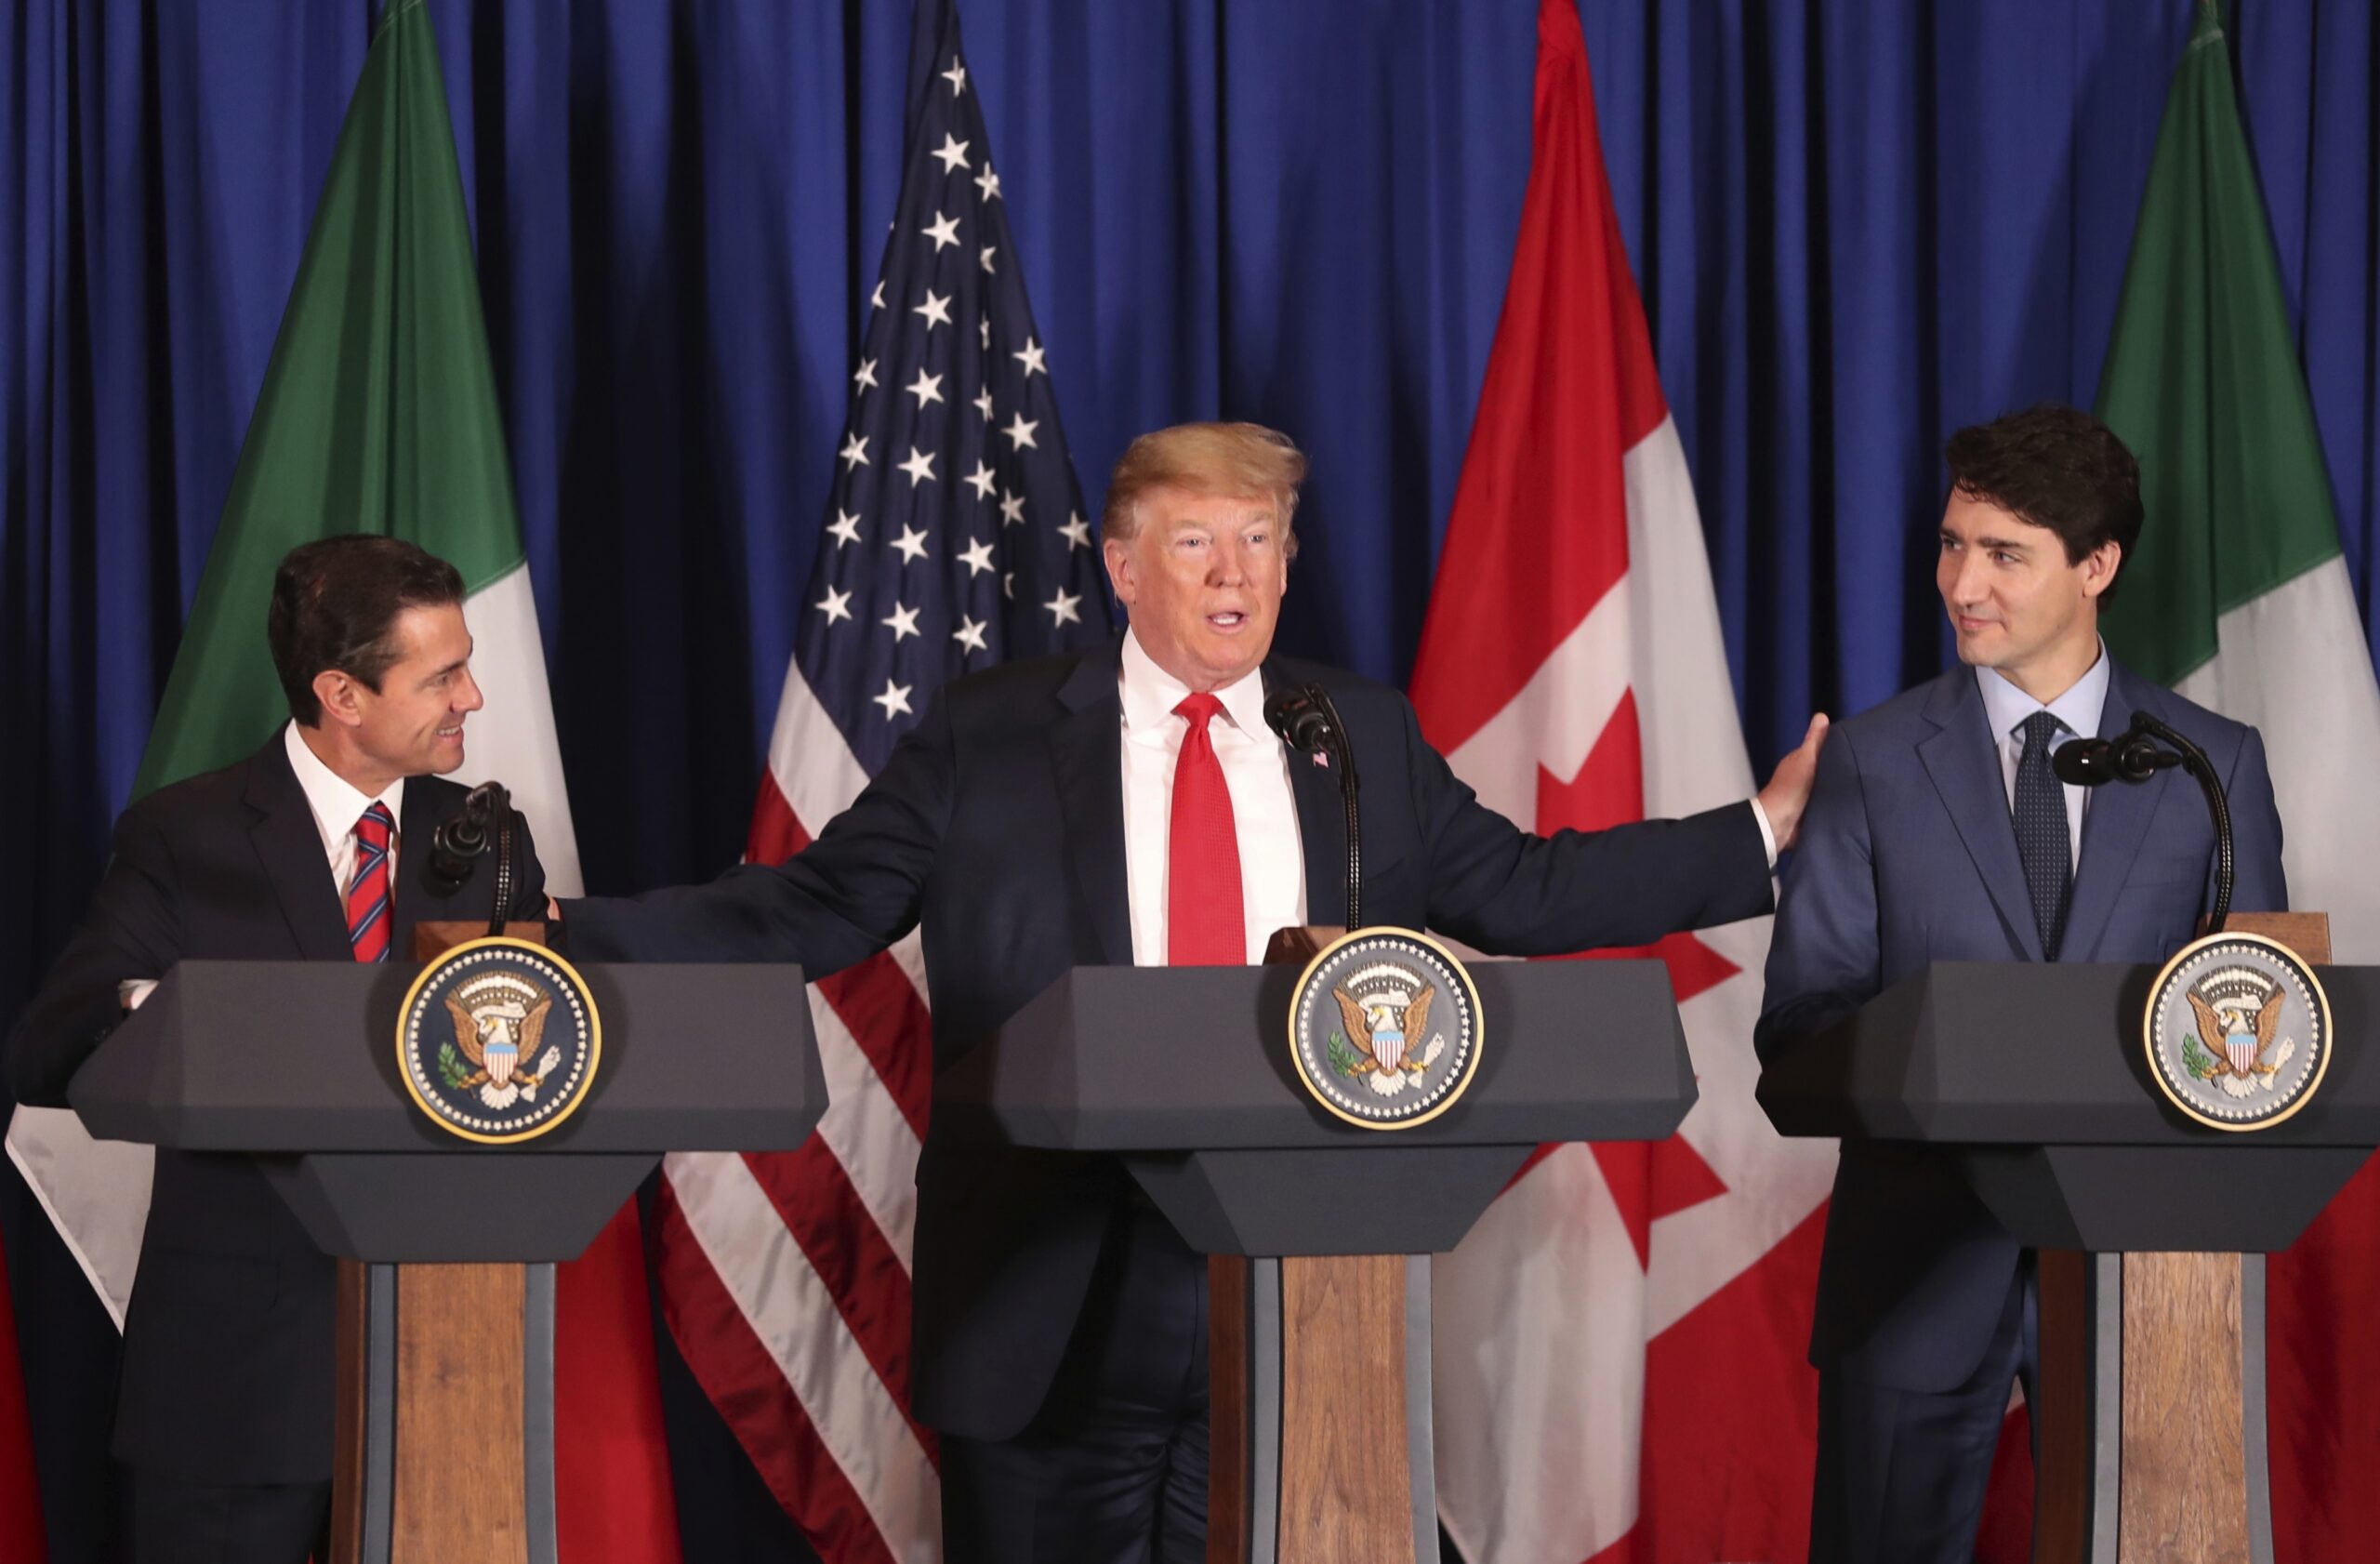 President Donald Trump, Mexico's President Enrique Pena Nieto, and Canada's Prime Minister Justin Trudeau